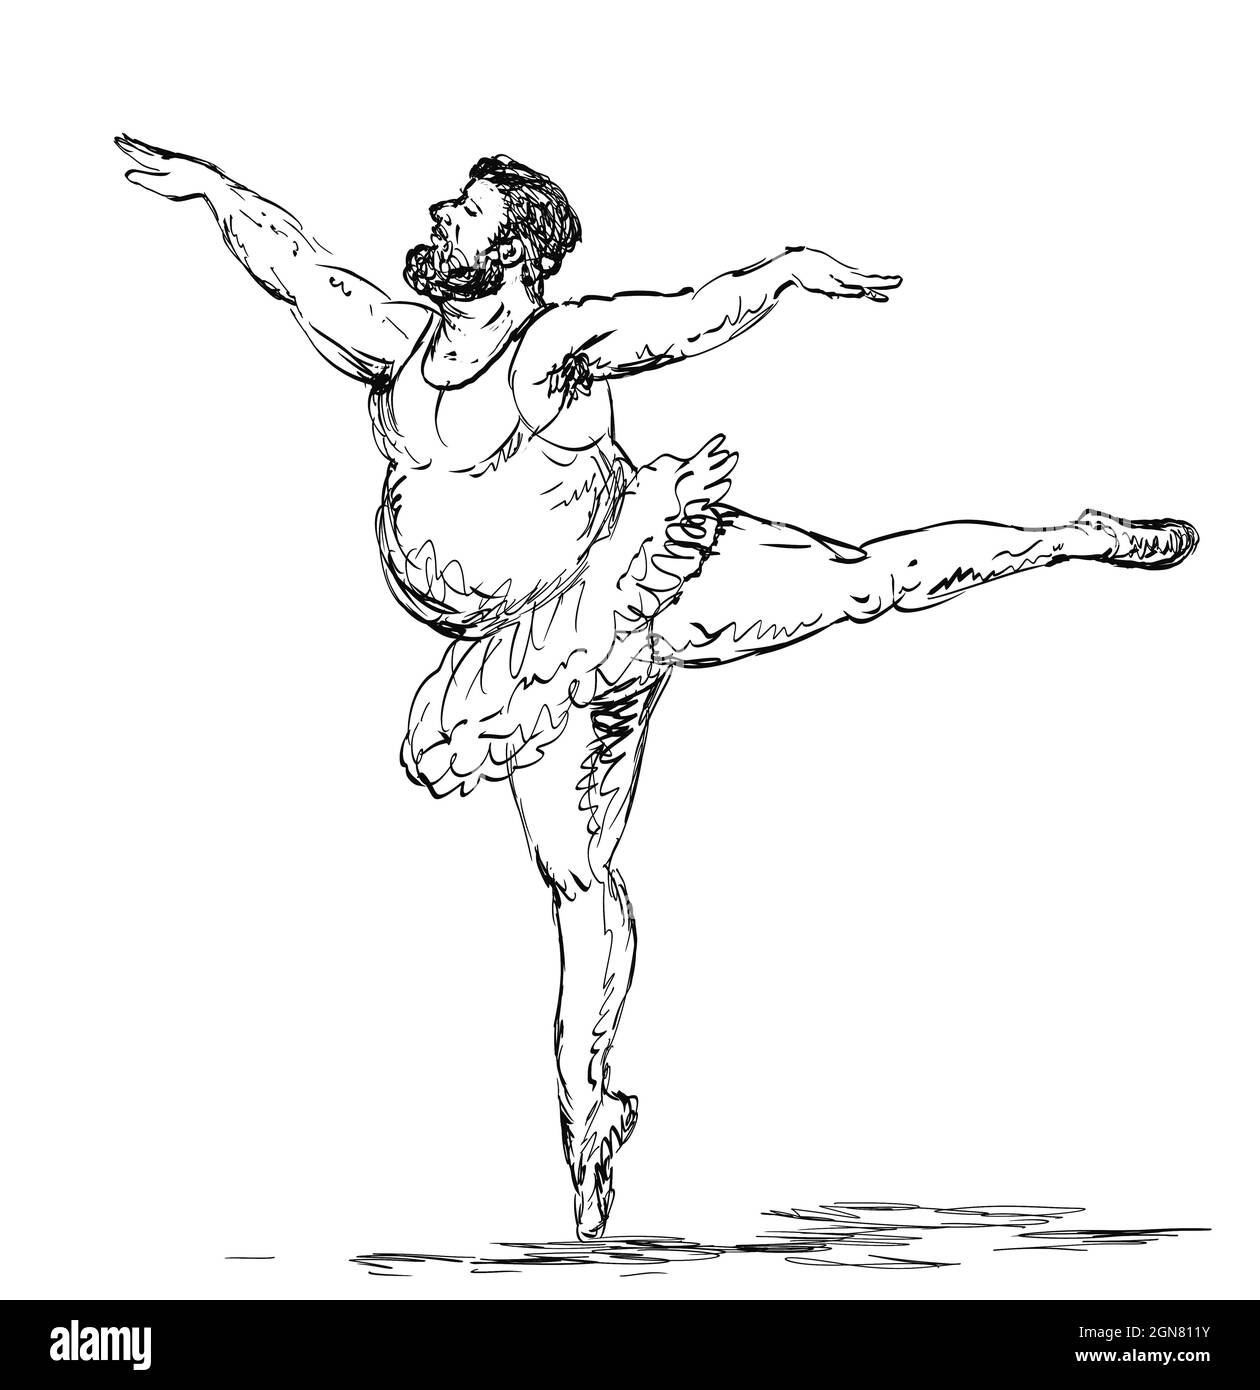 Disegno di ballerina immagini e fotografie stock ad alta risoluzione - Alamy